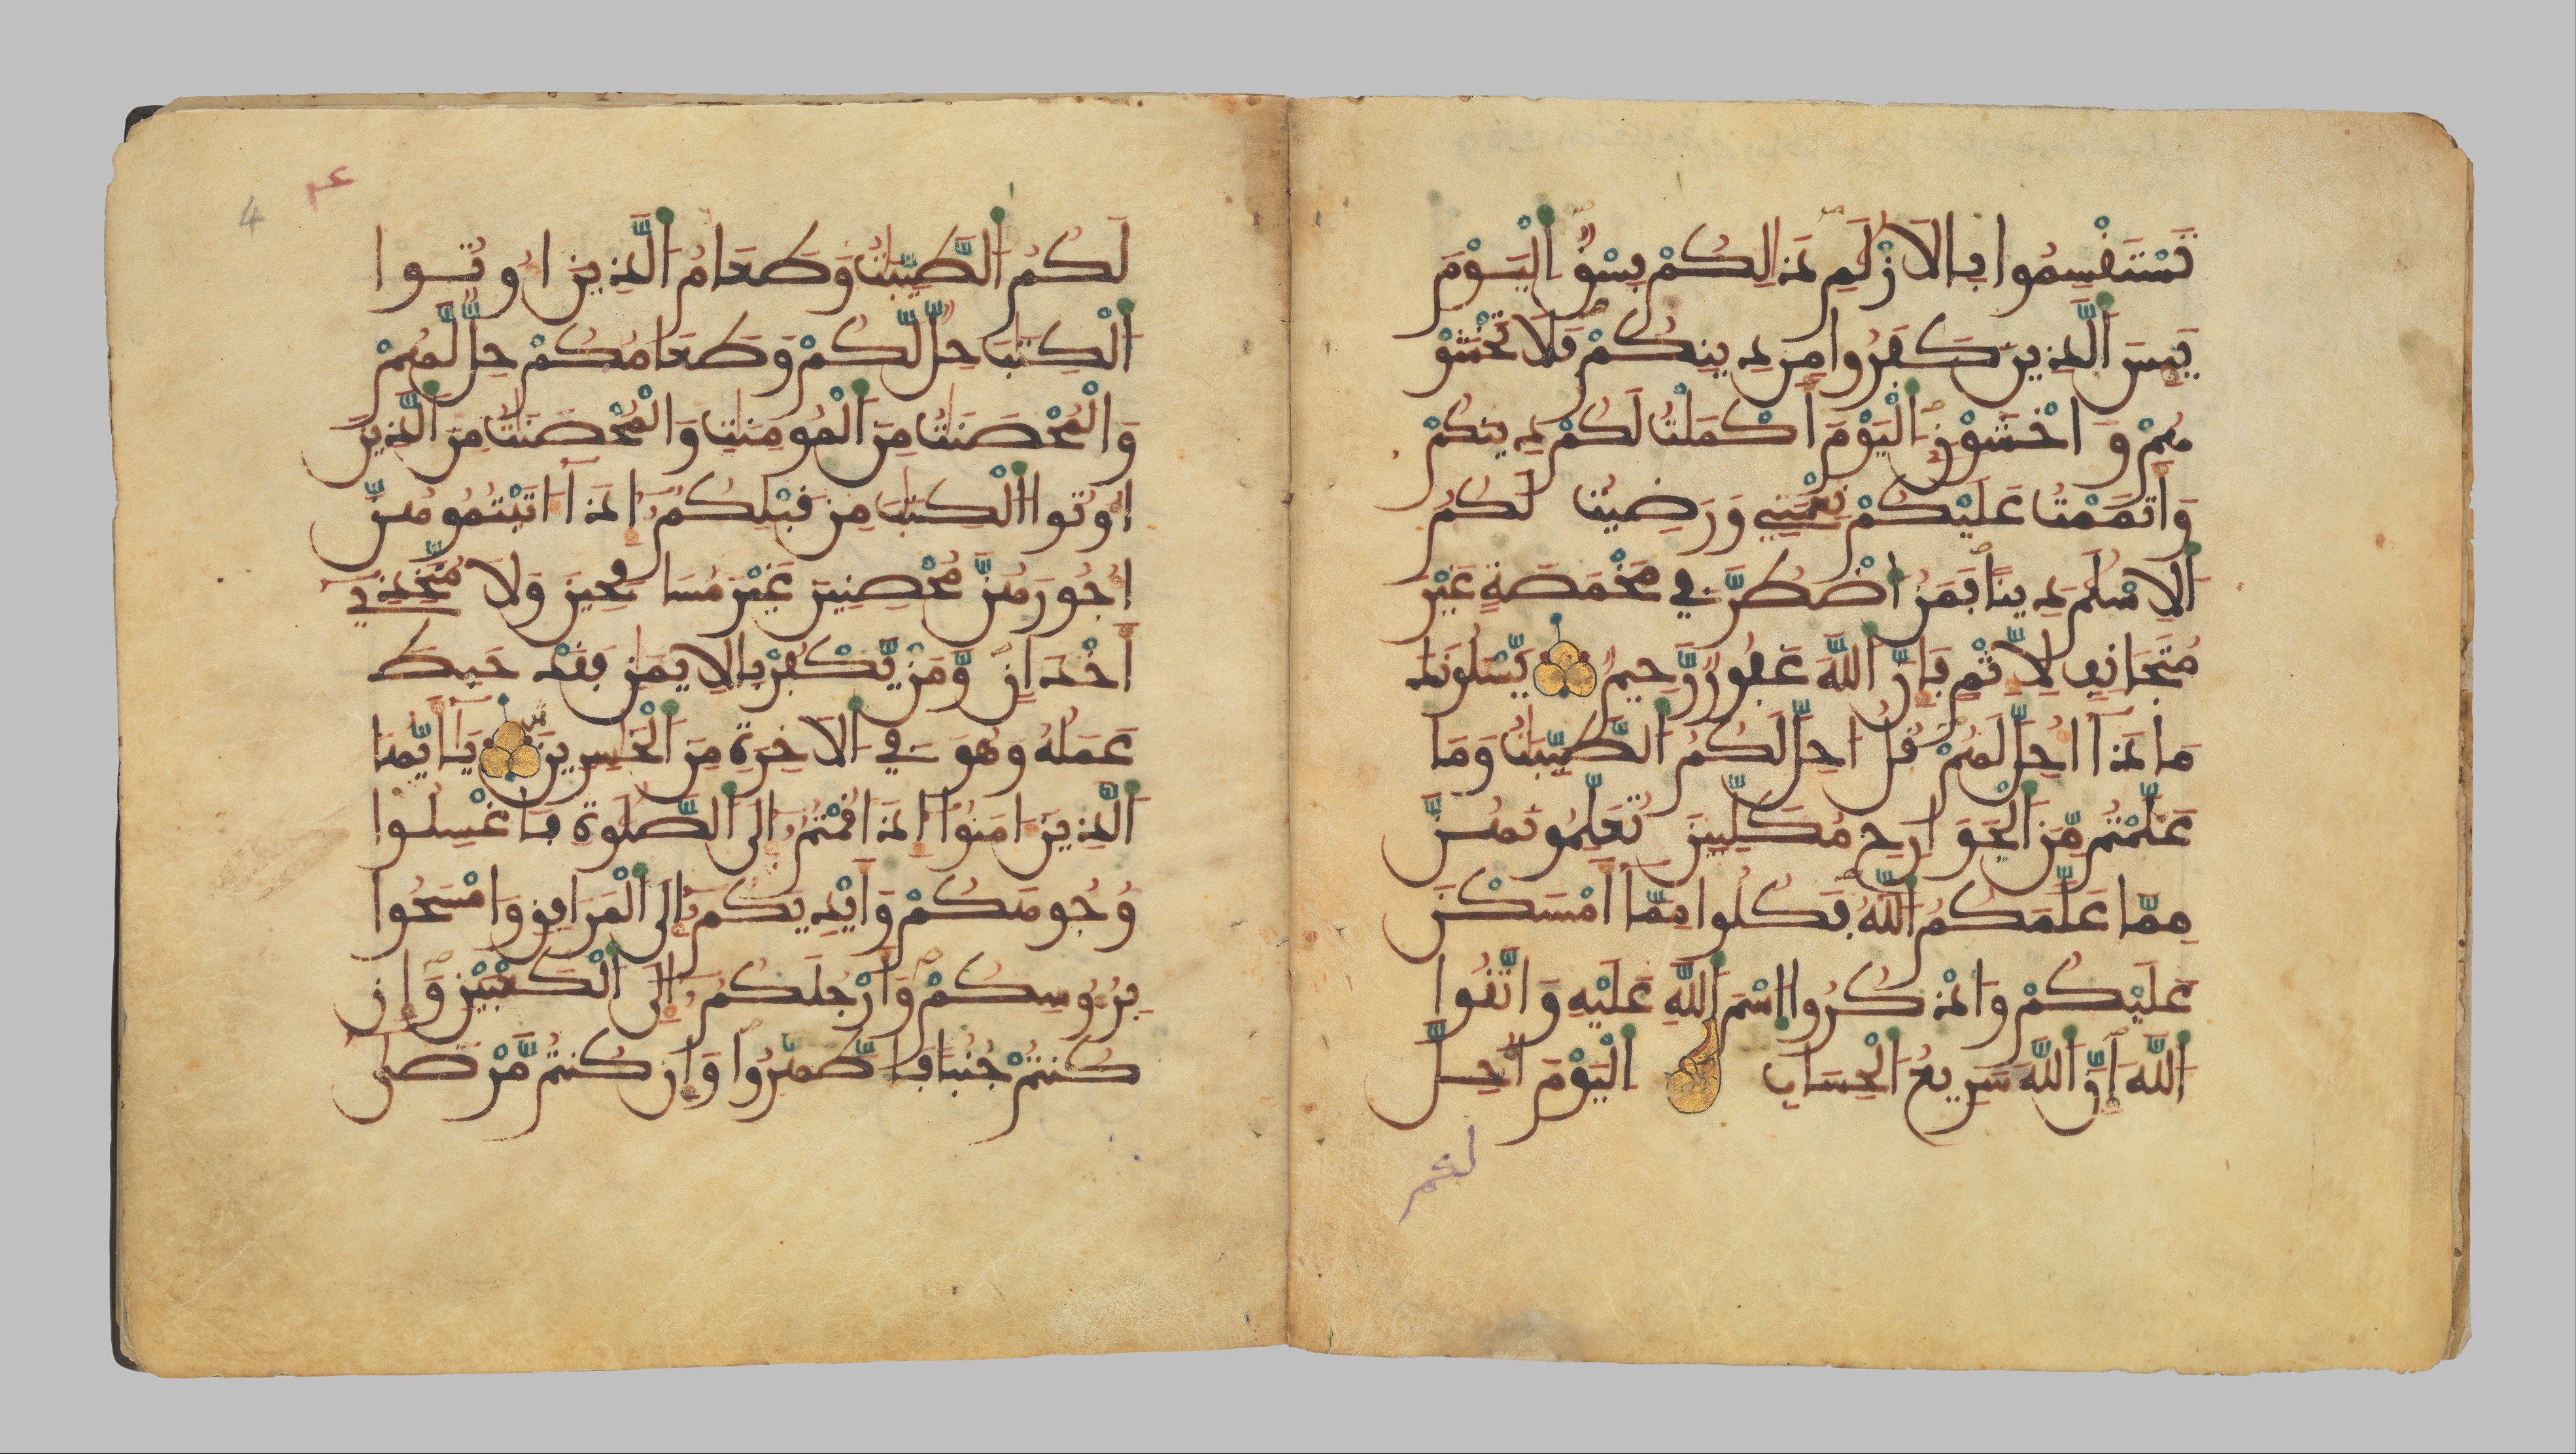 マグリビー体のコーラン写本、14世紀 | Met Museum